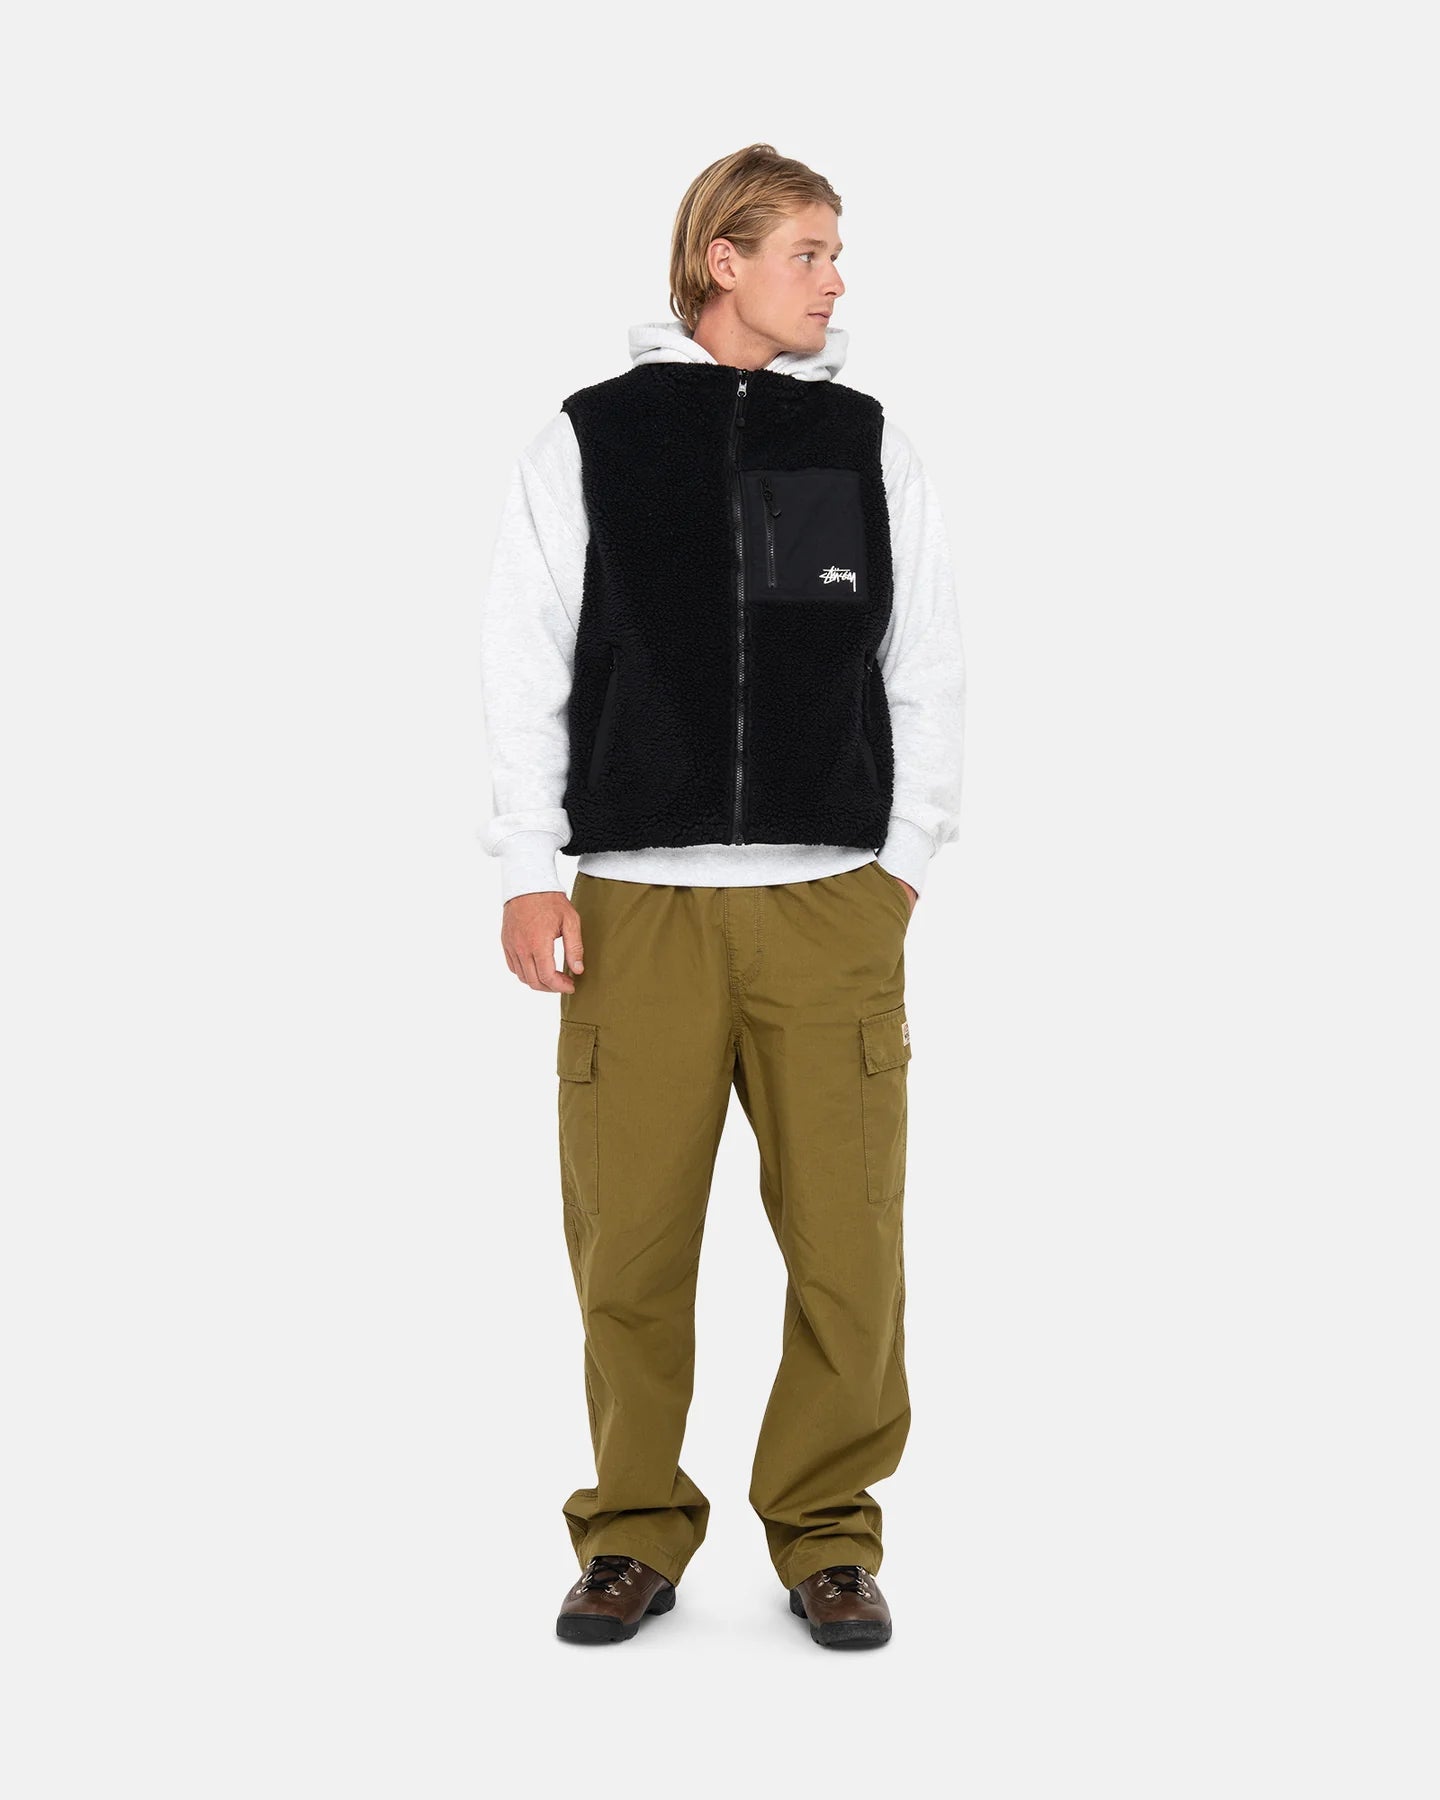 Stüssy Sherpa Reversible Vest Black